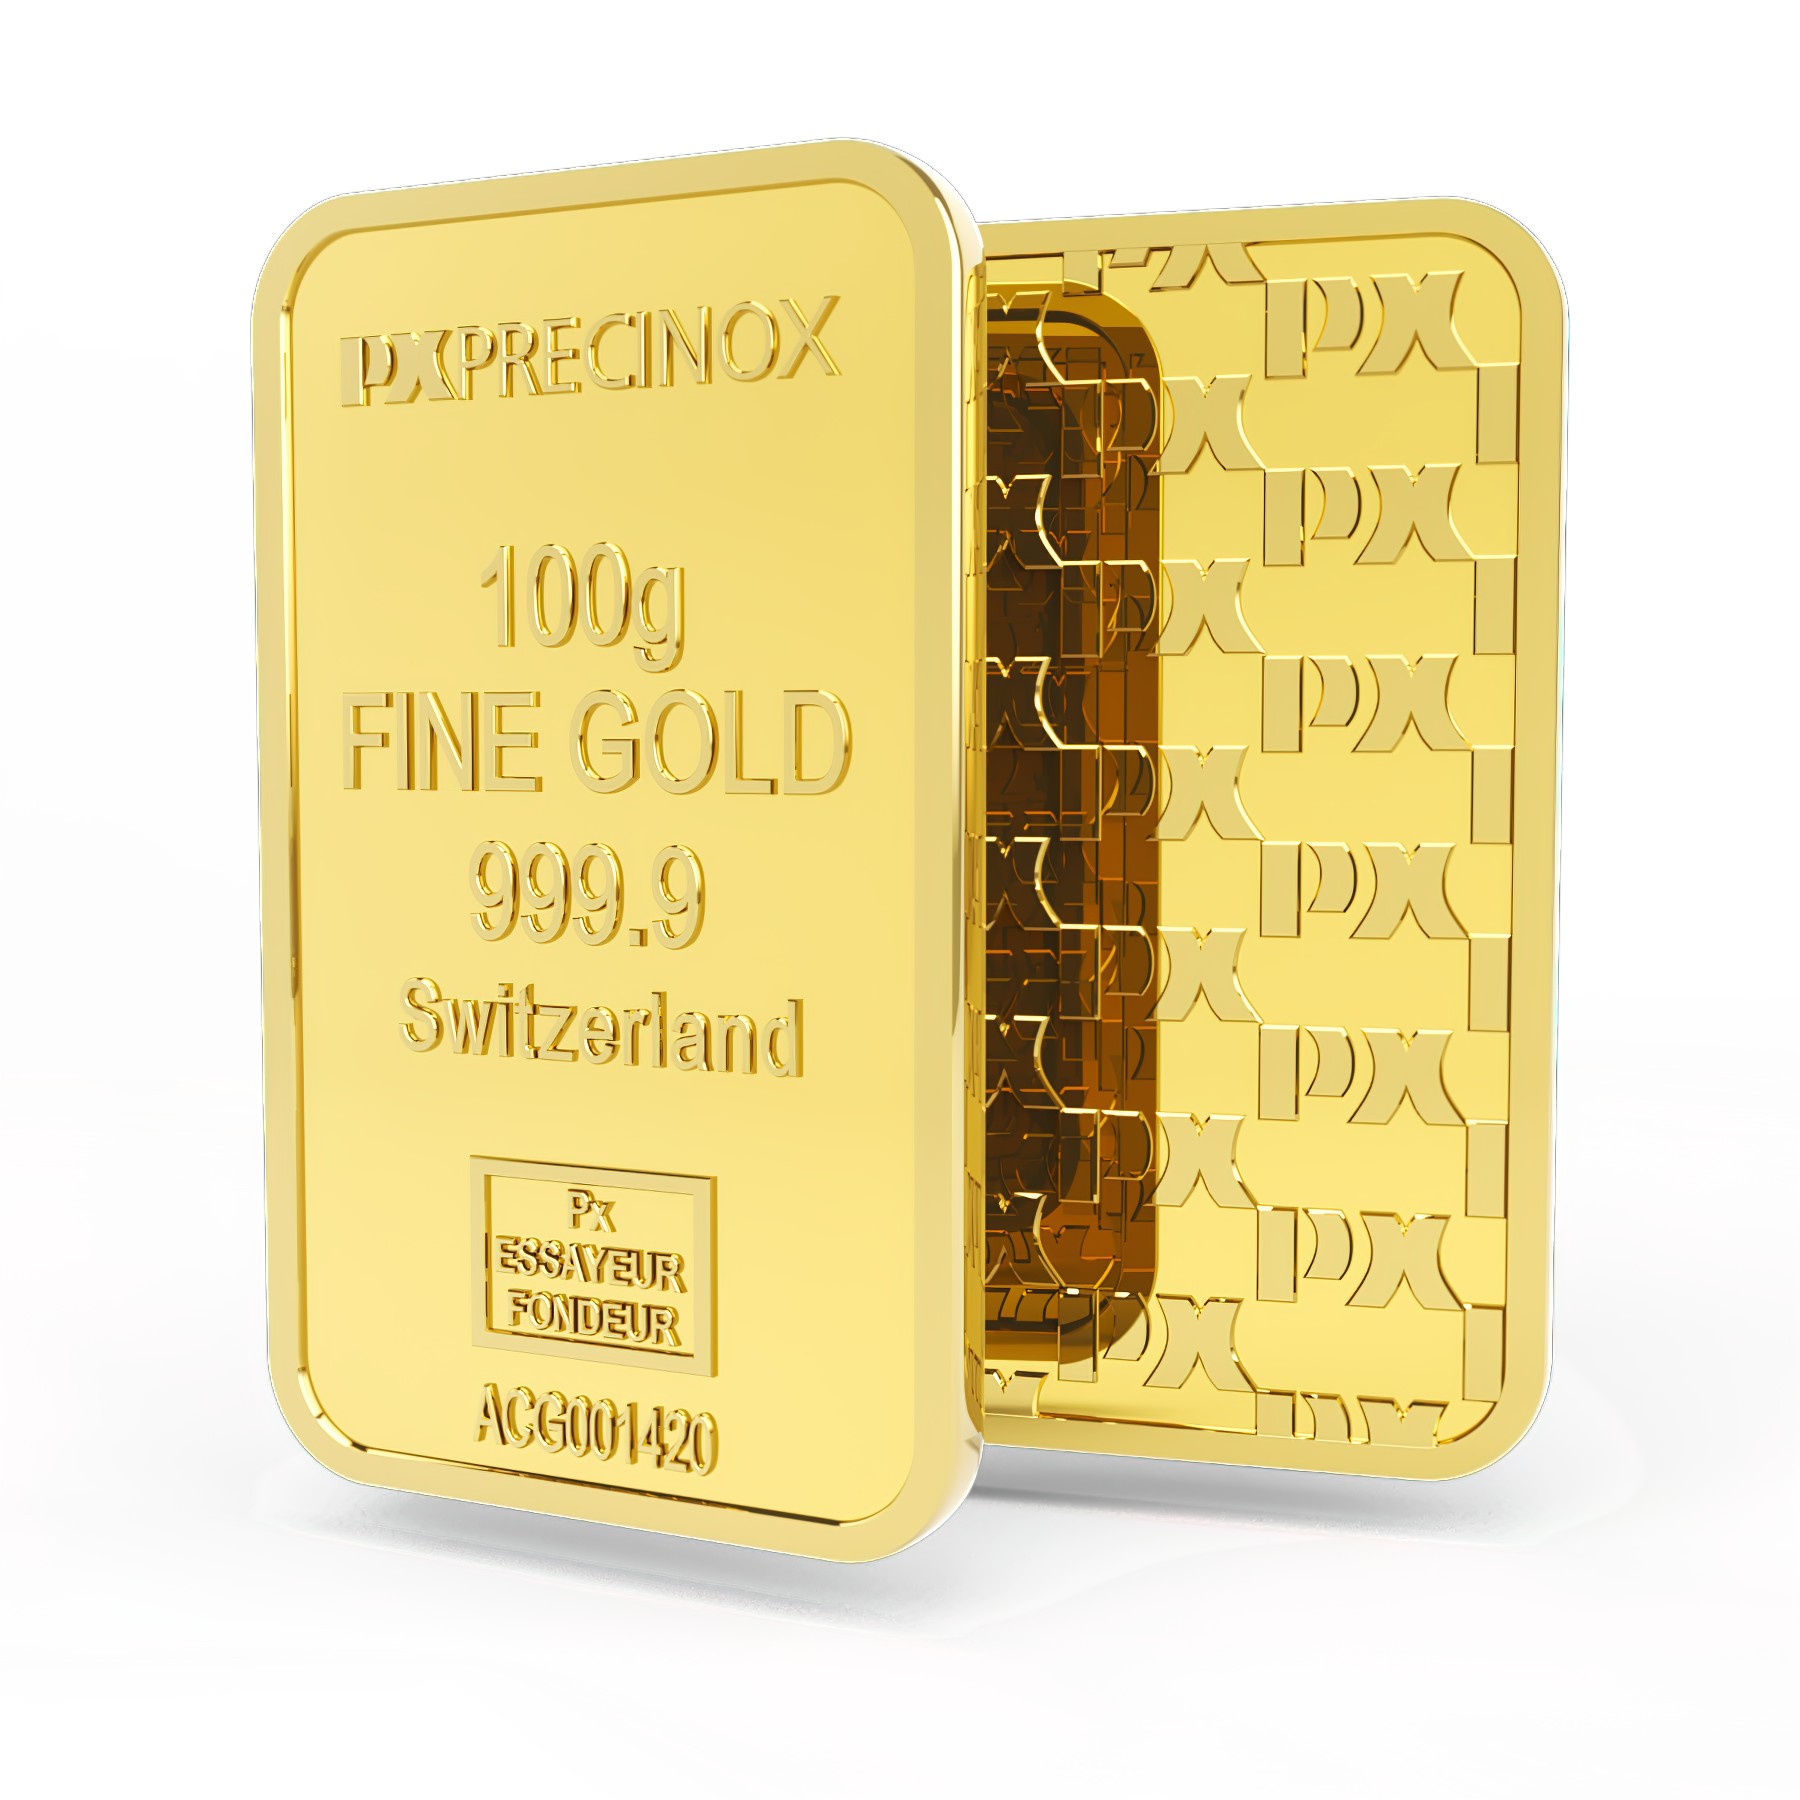 Sztabka złota 100g, Szwajcaria, Fine Gold 999.9